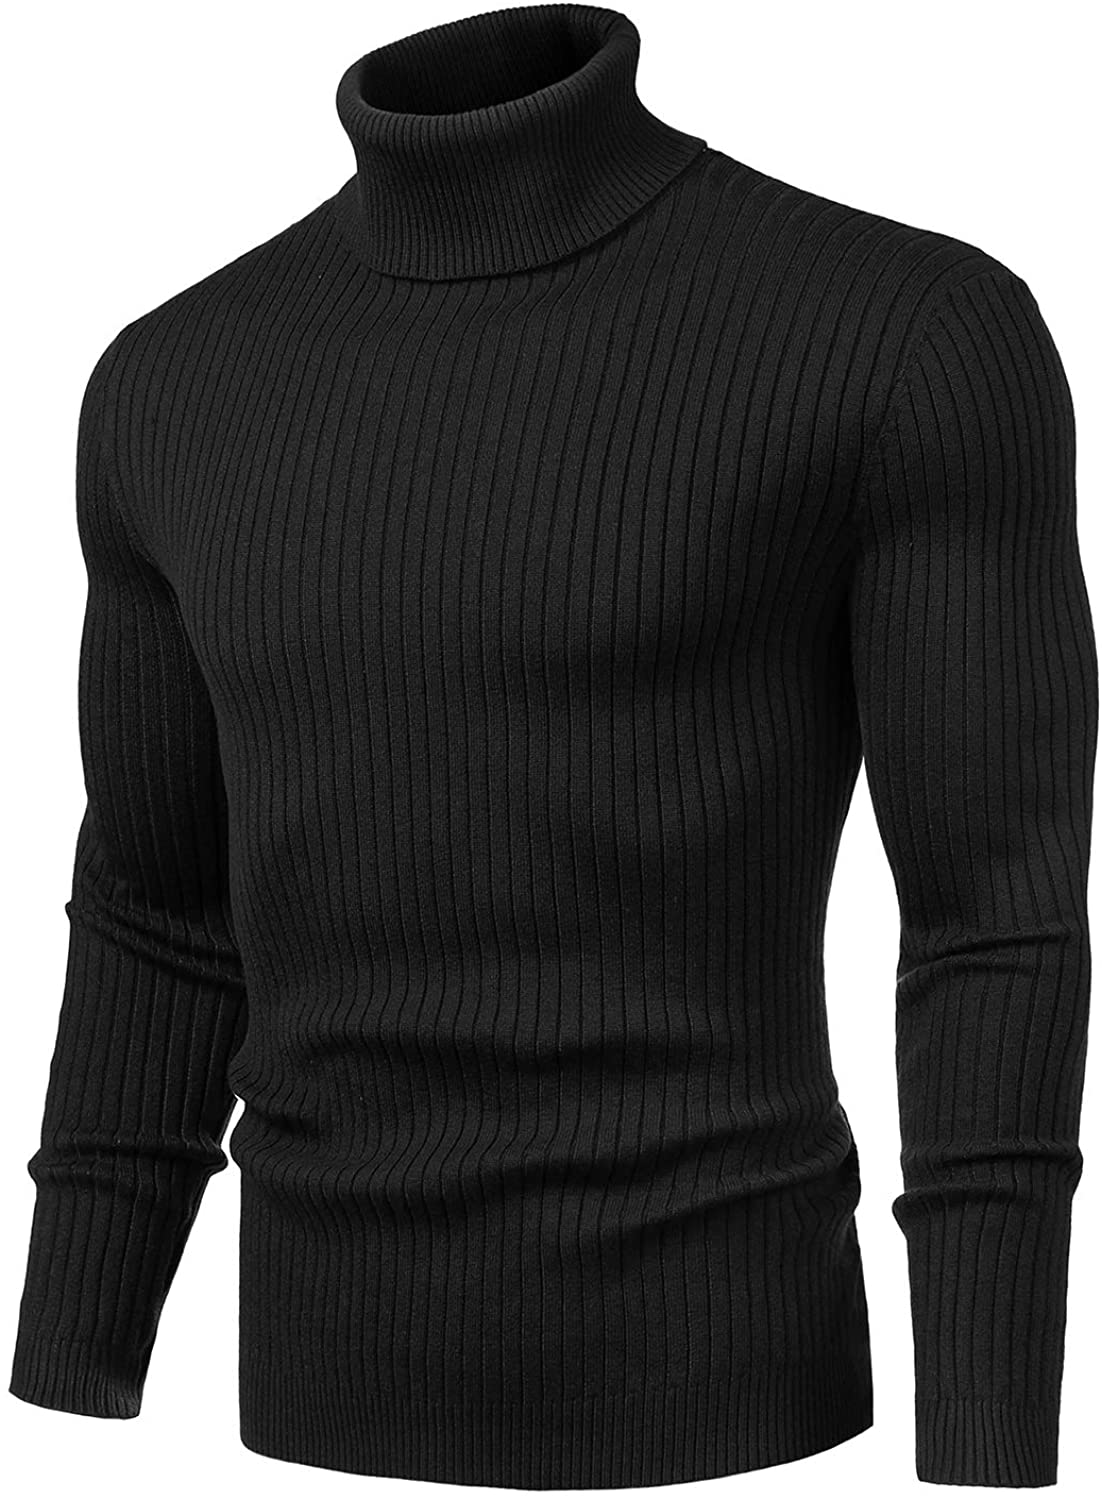 Cromoncent Men Pullover Jumper Slim Knitted Turtleneck Sweaters